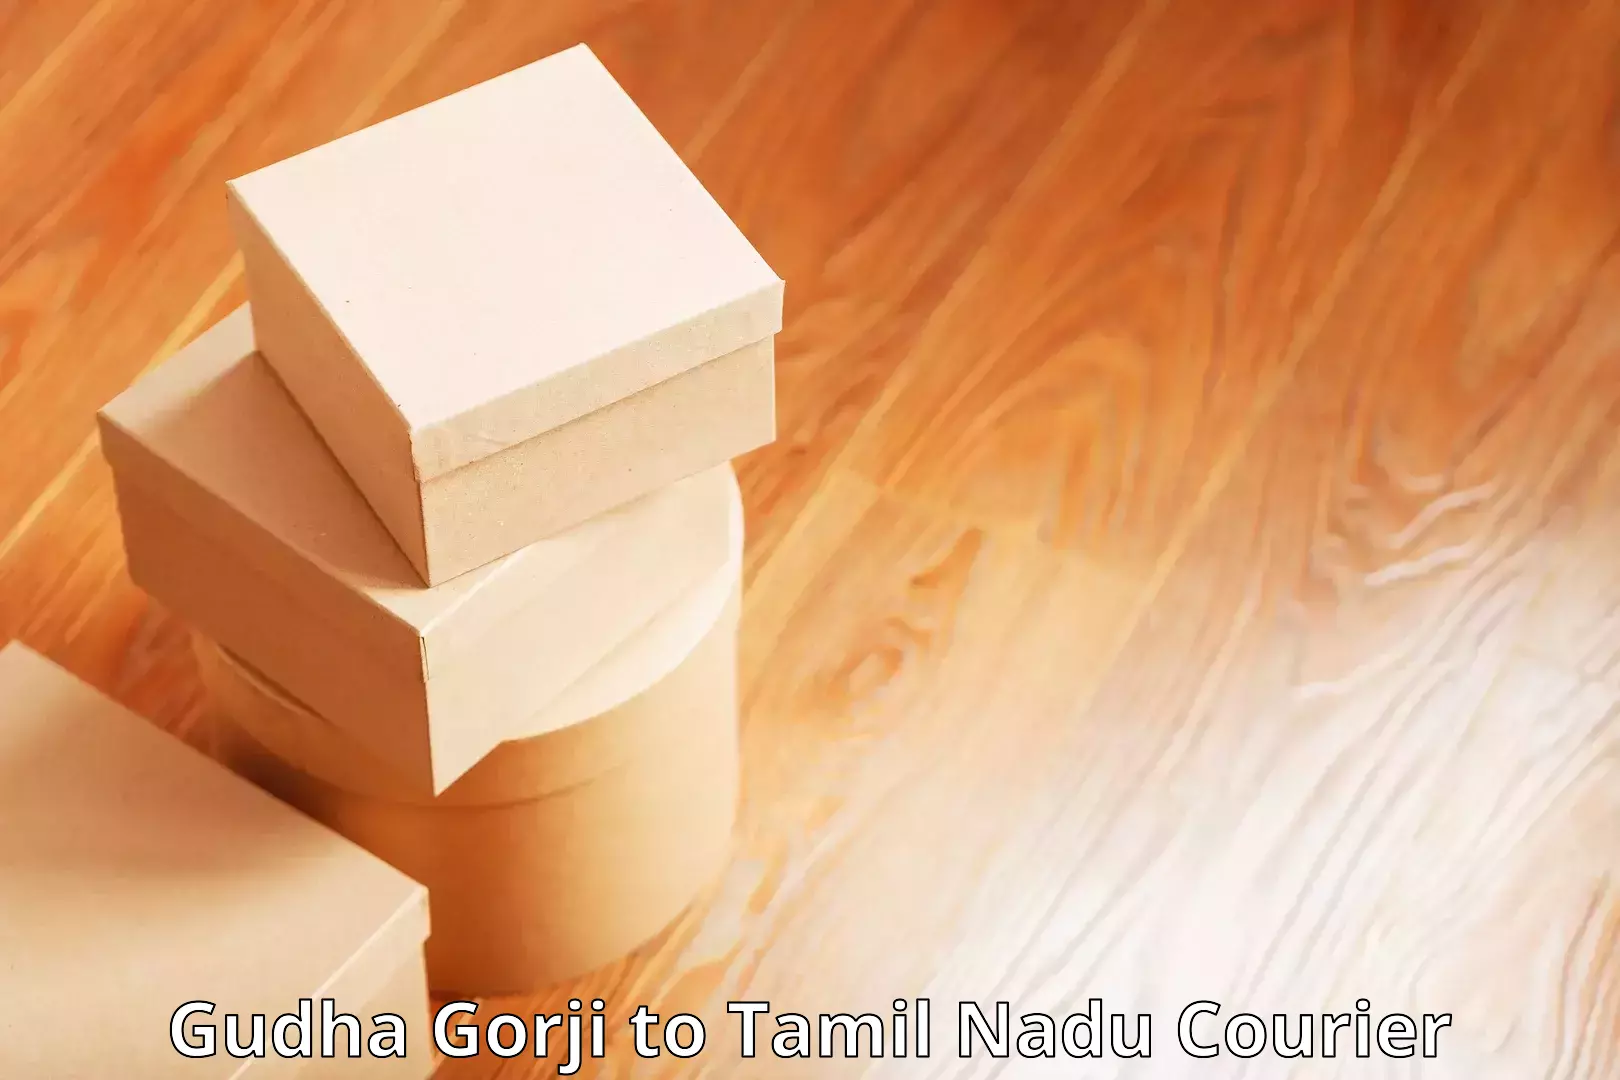 Tech-enabled shipping Gudha Gorji to Kulithalai